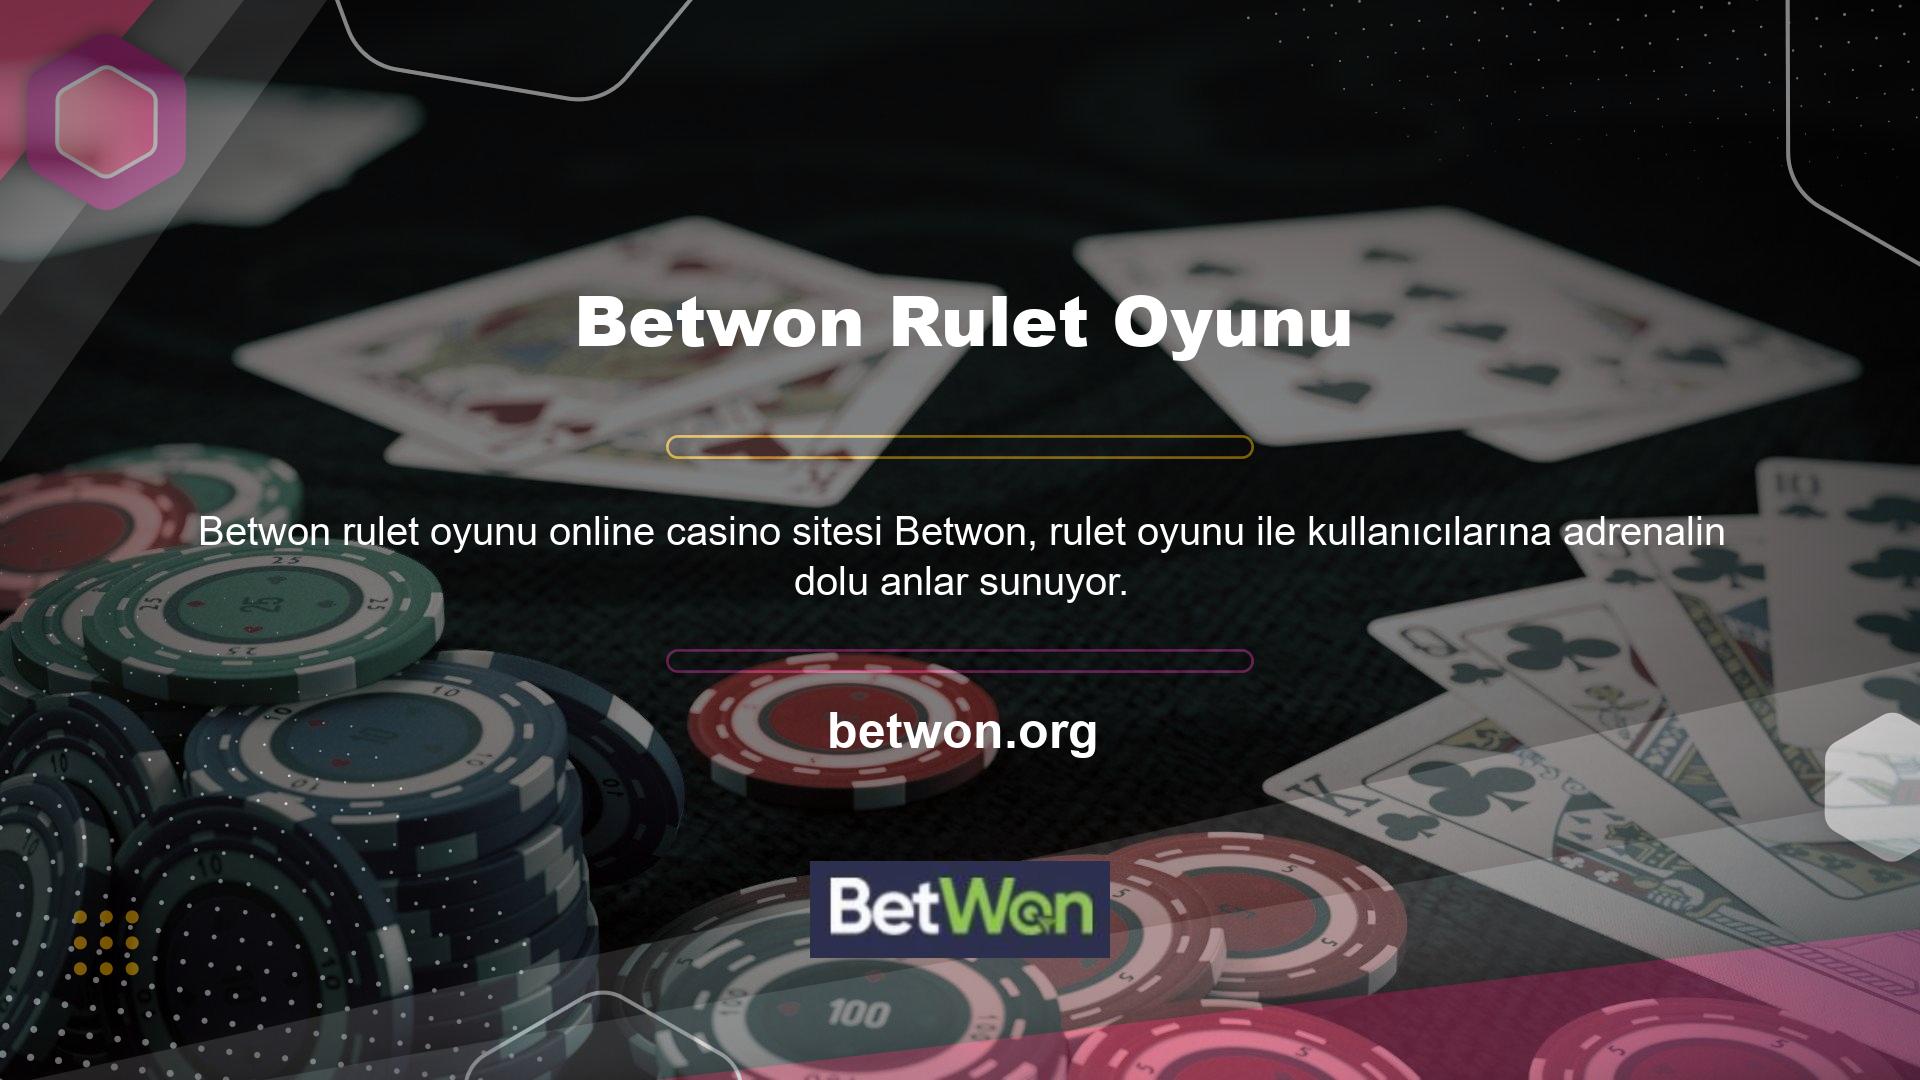 Betwon Rulet Oyununda Yeni Üye İndirimi Rulet, özel arayüzü ve özel bonus özellikleri bulunan masalarda oynanır